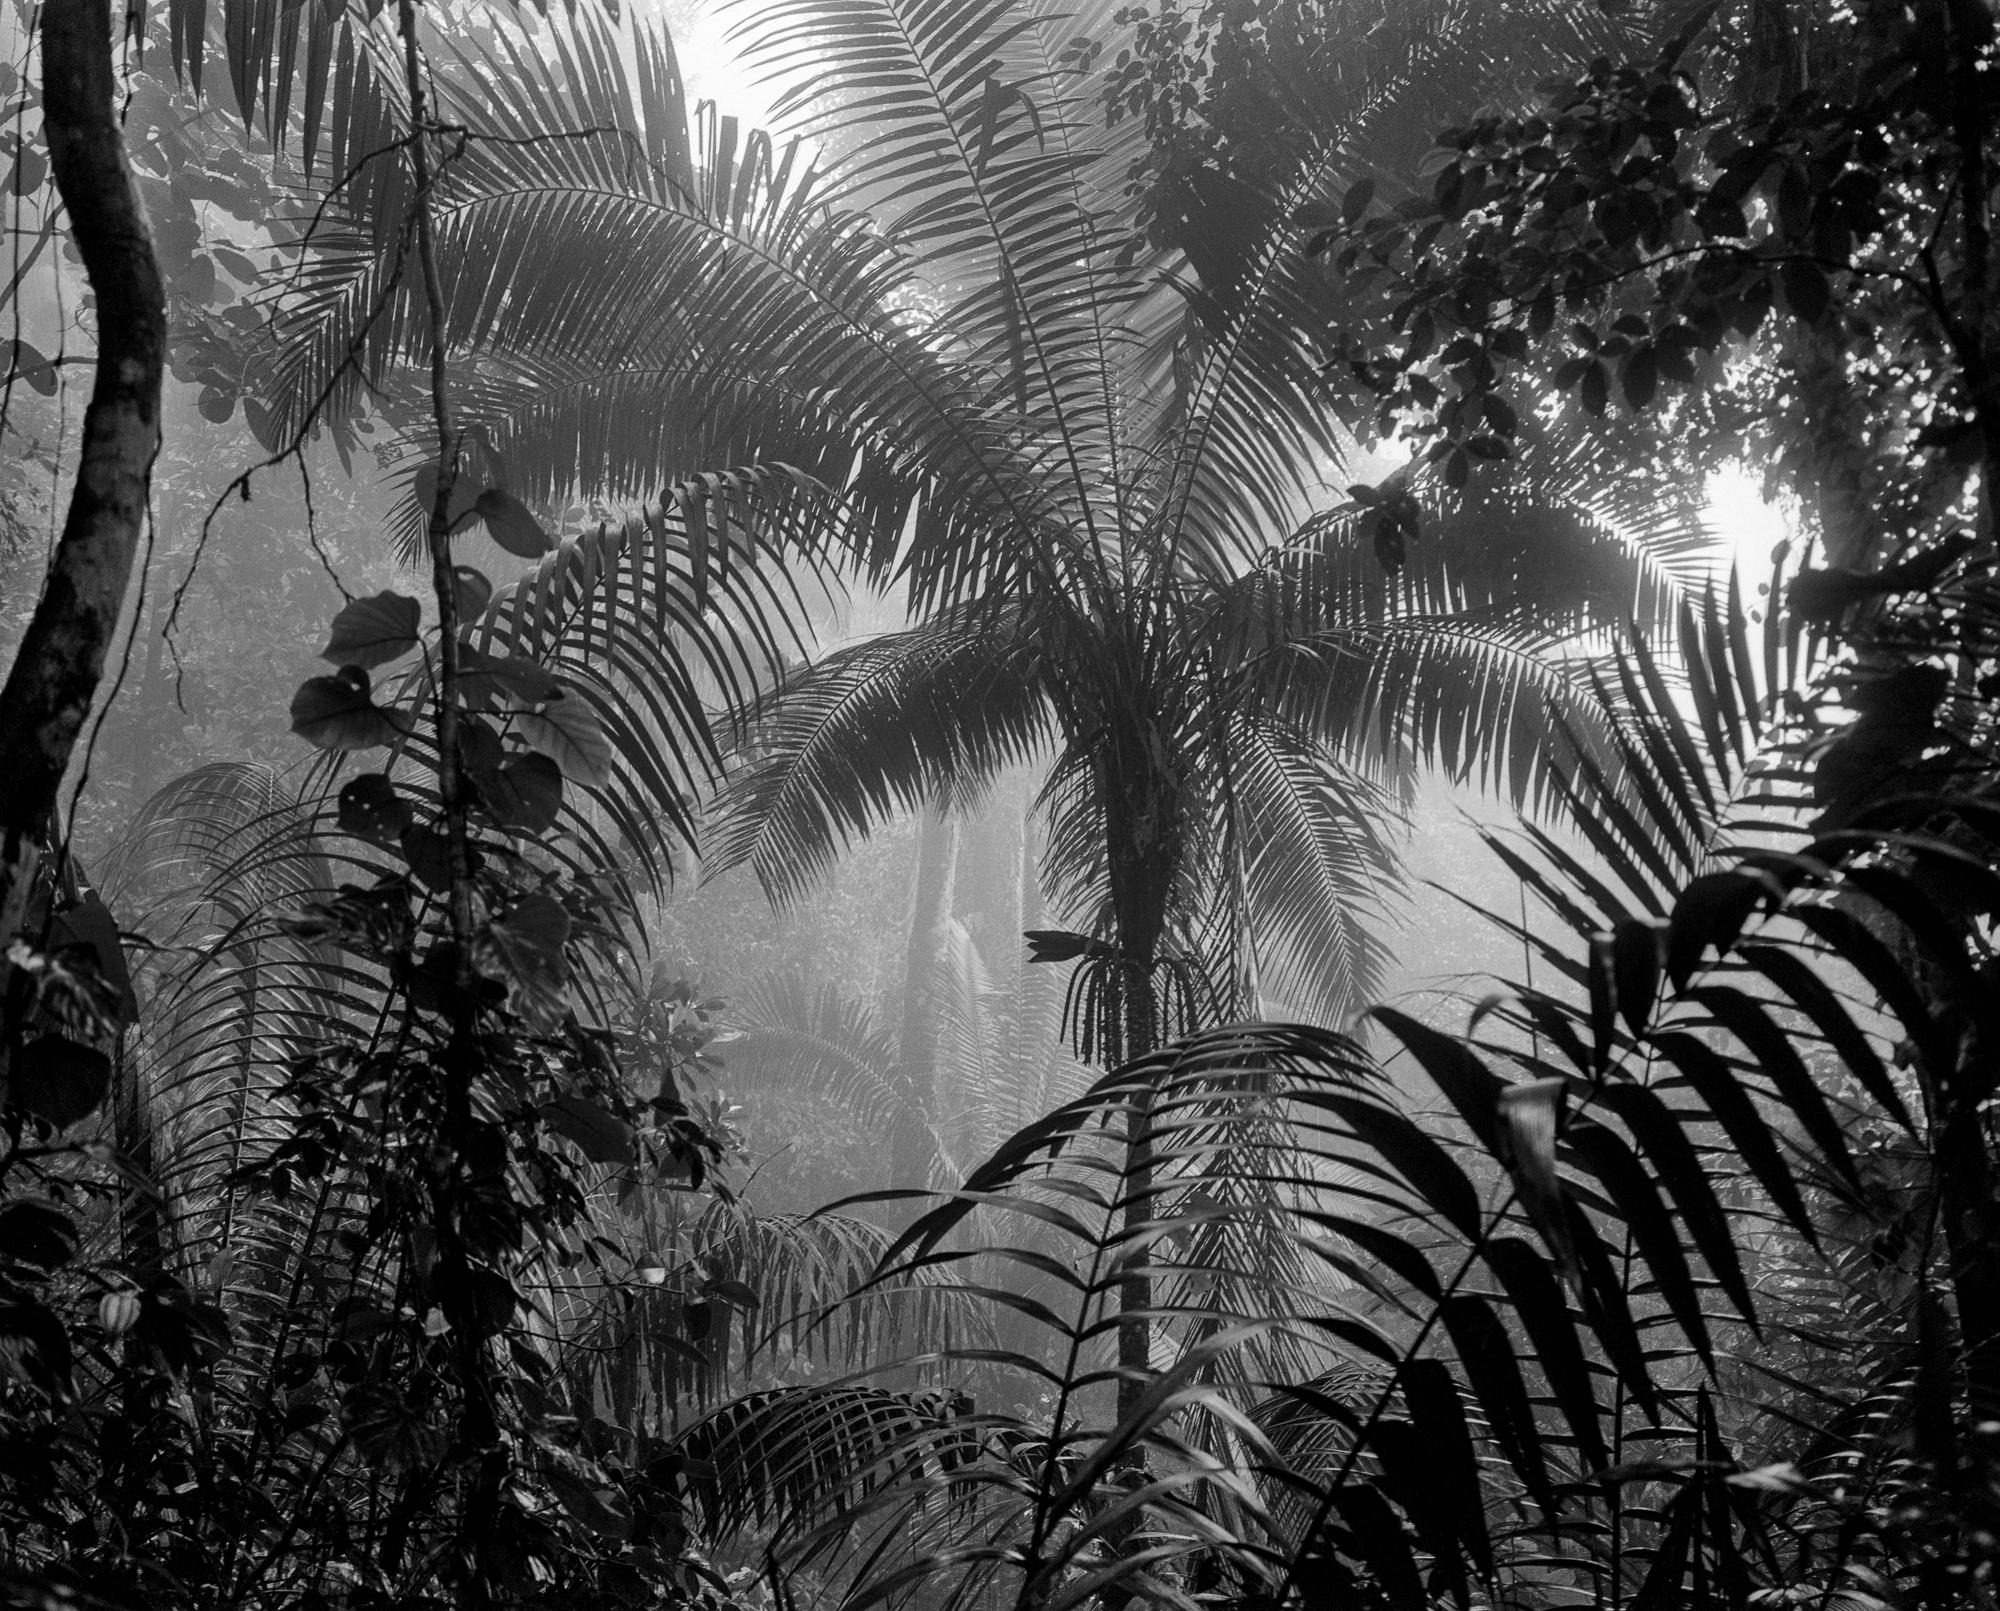 Bosque Húmedo Tropical II Nuqui, de la série Bosques. I. A B.